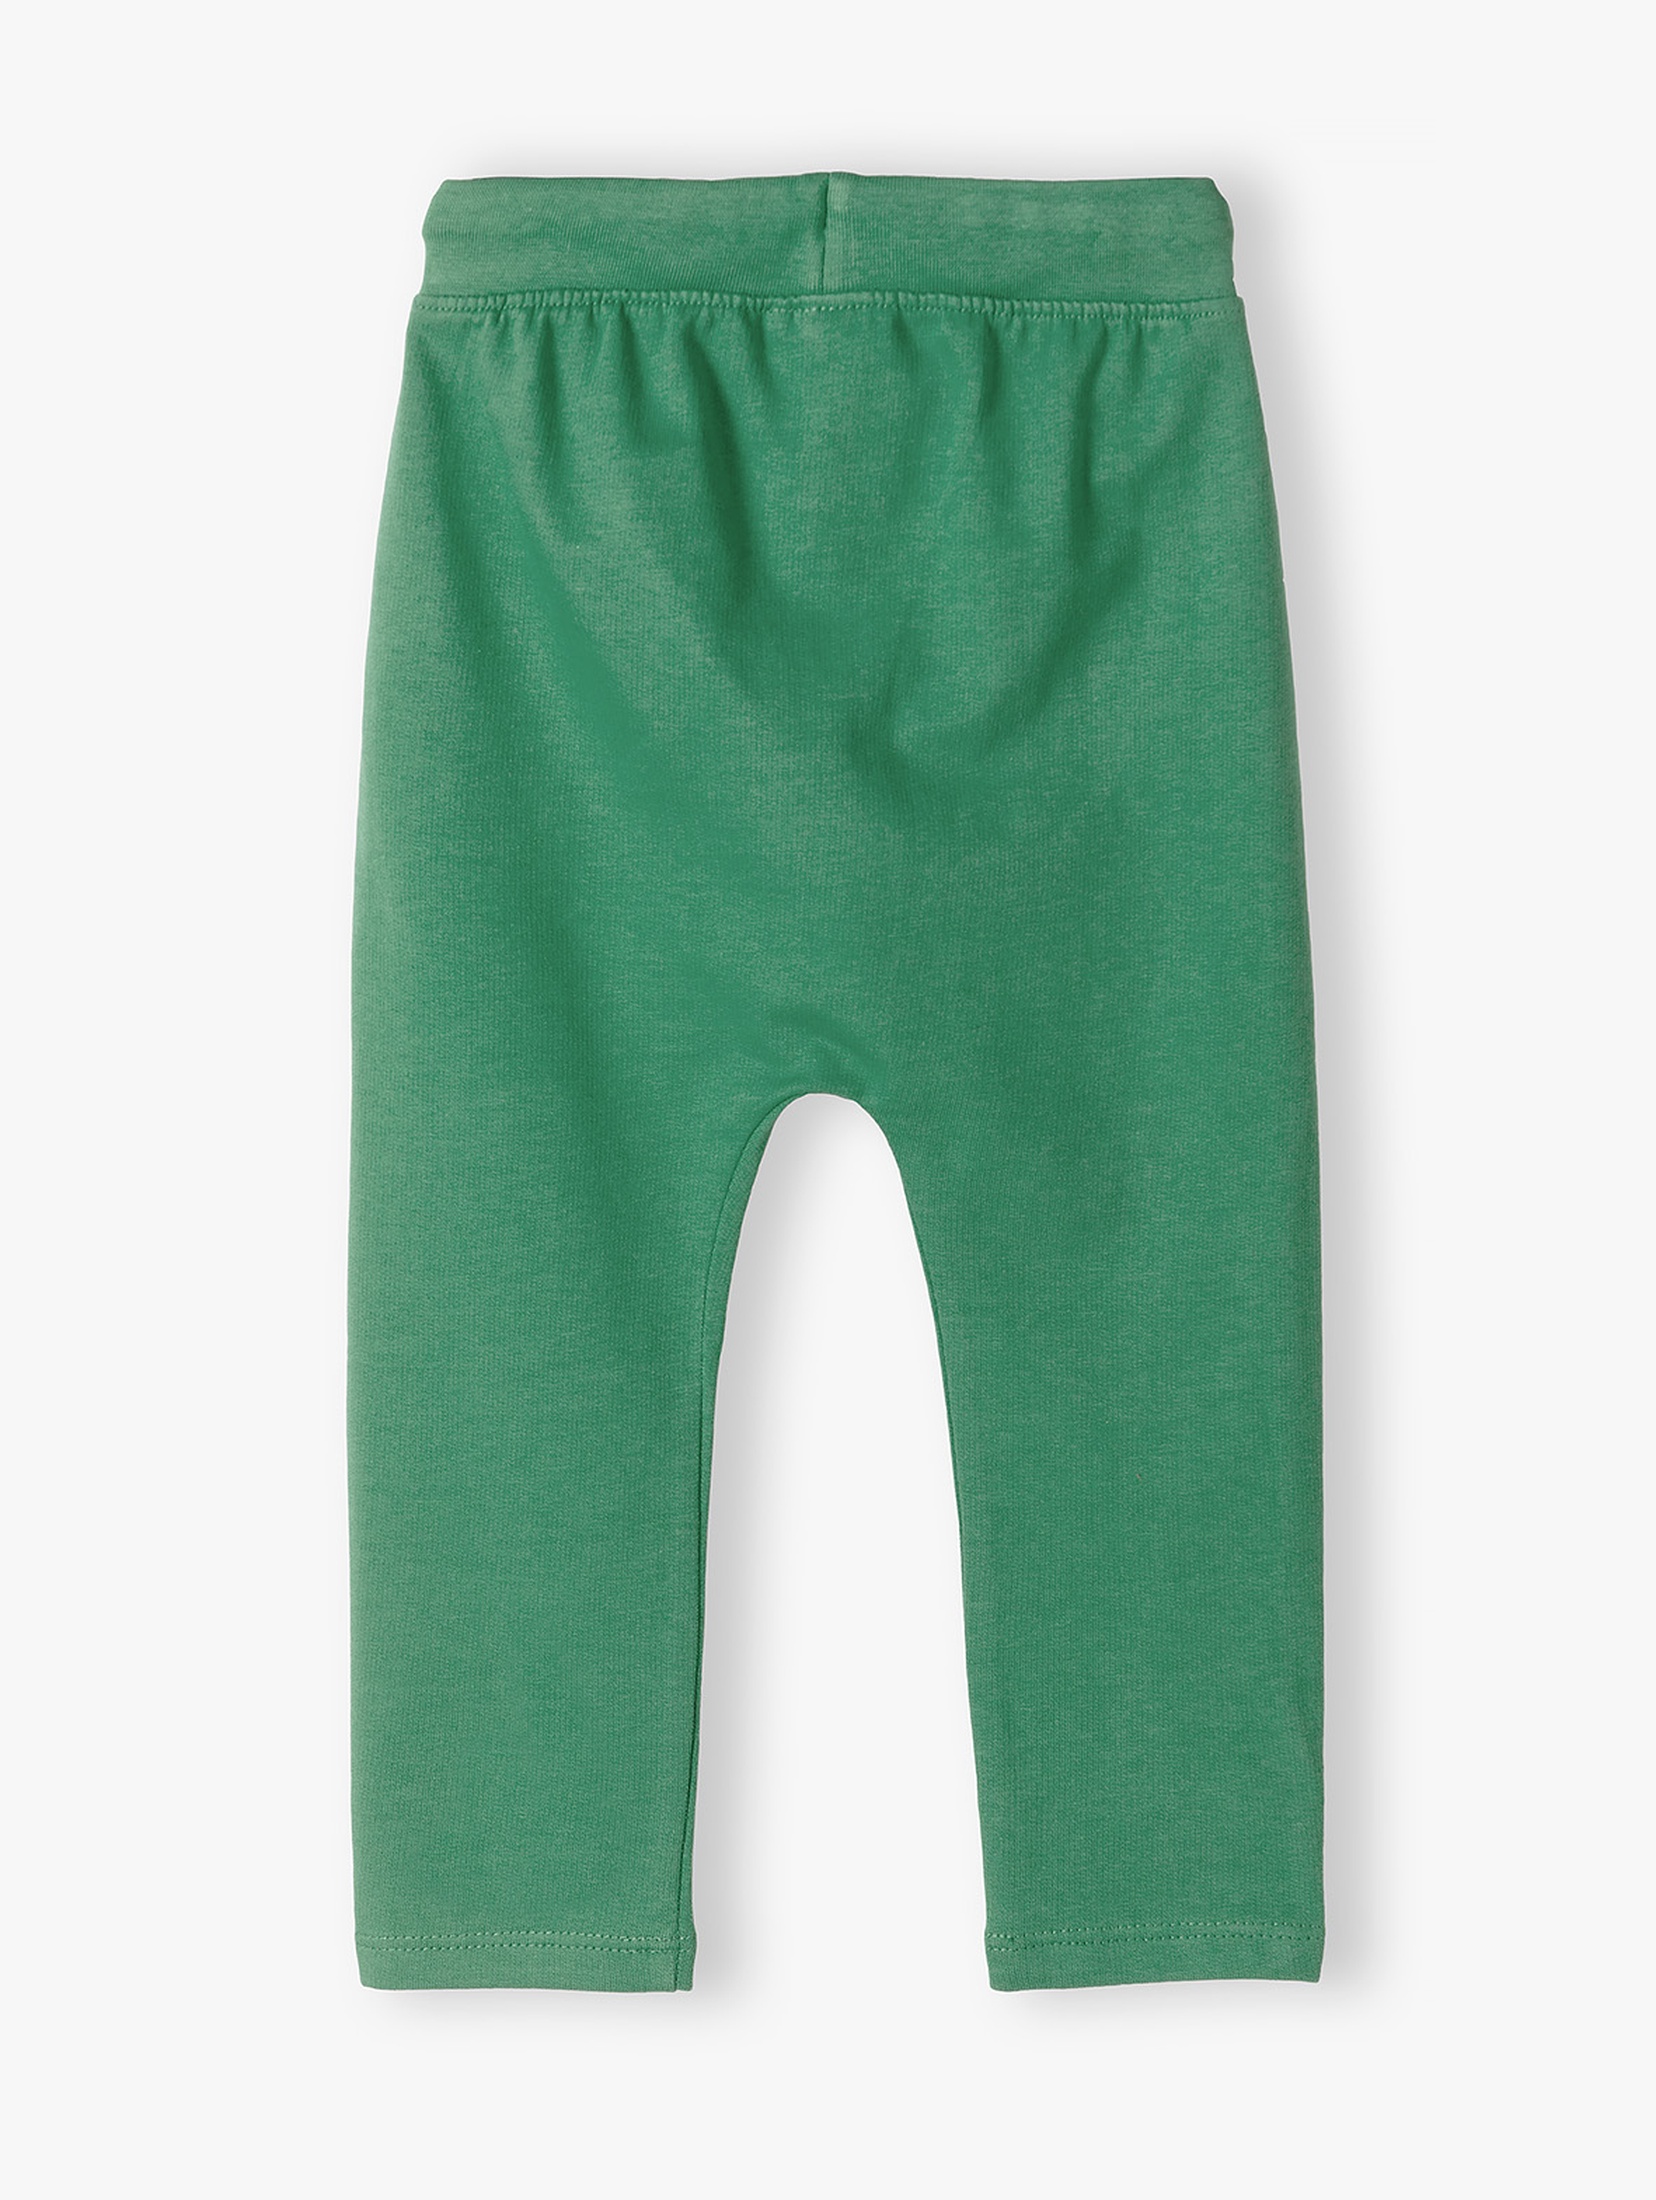 Zielone bawełniane spodnie dresowe niemowlęce